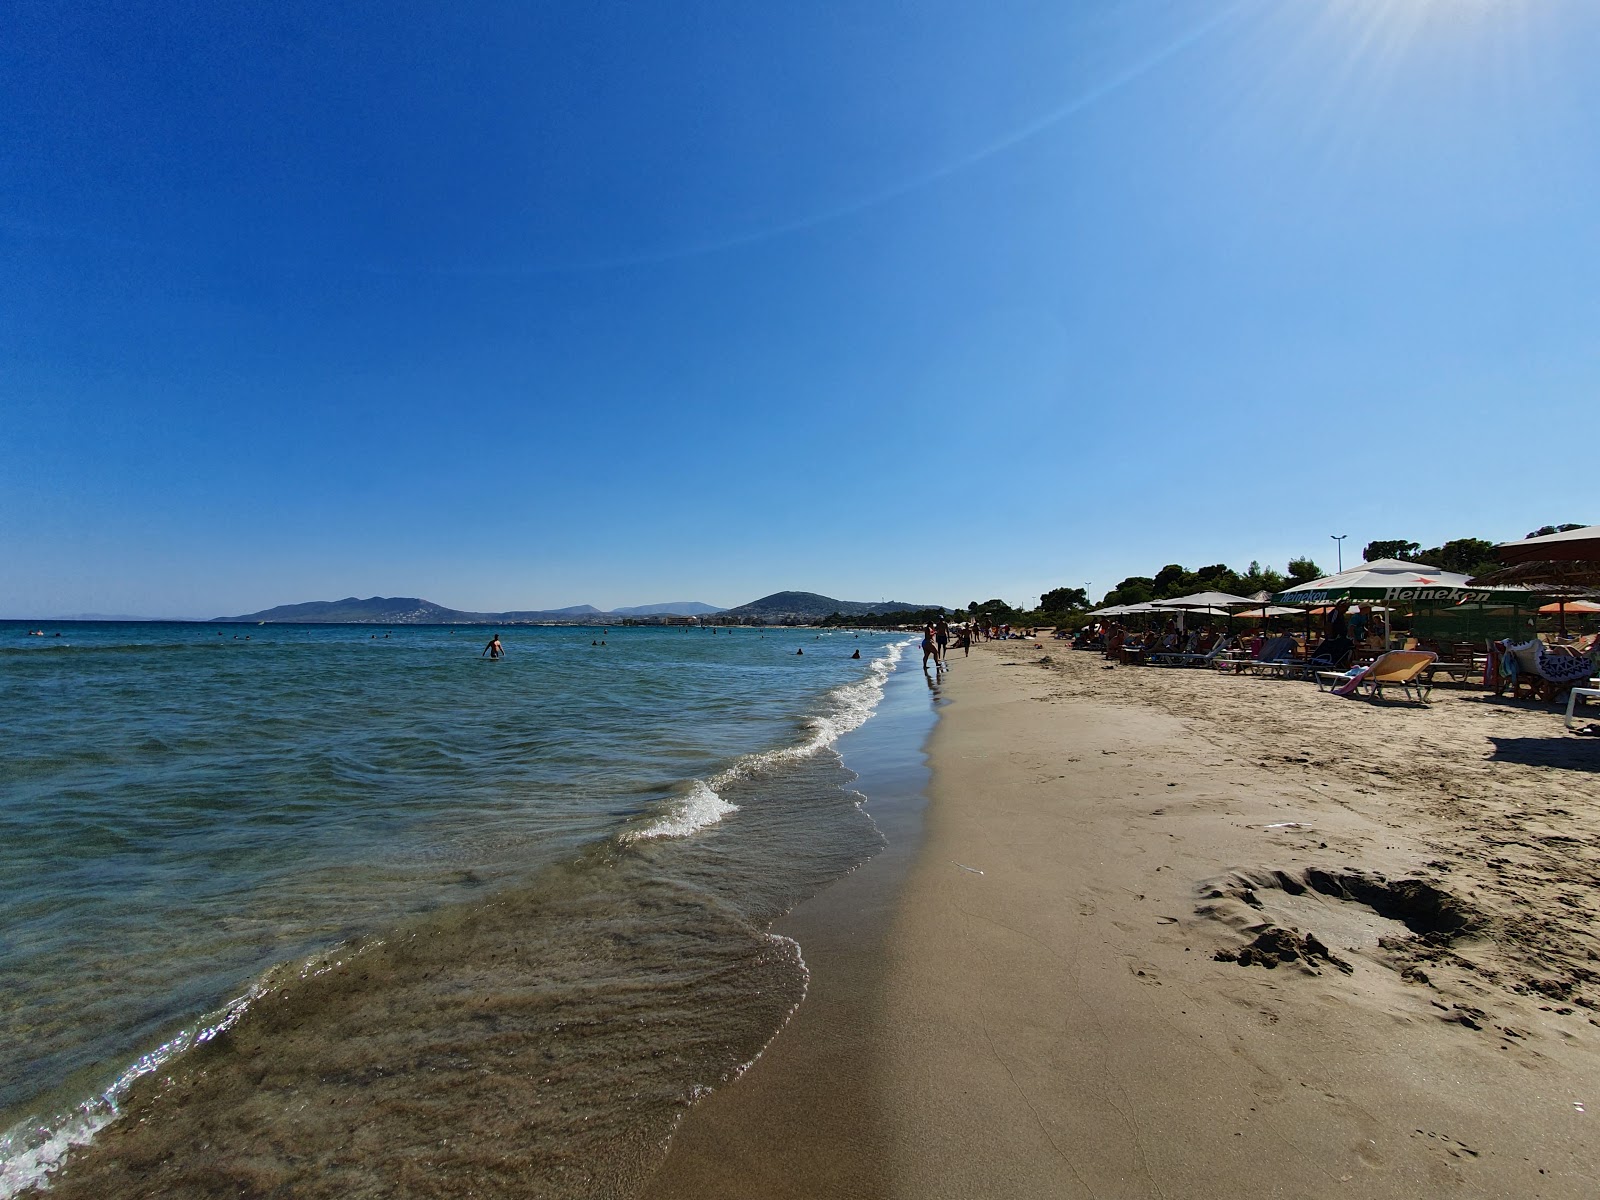 Artemis beach'in fotoğrafı parlak kum yüzey ile